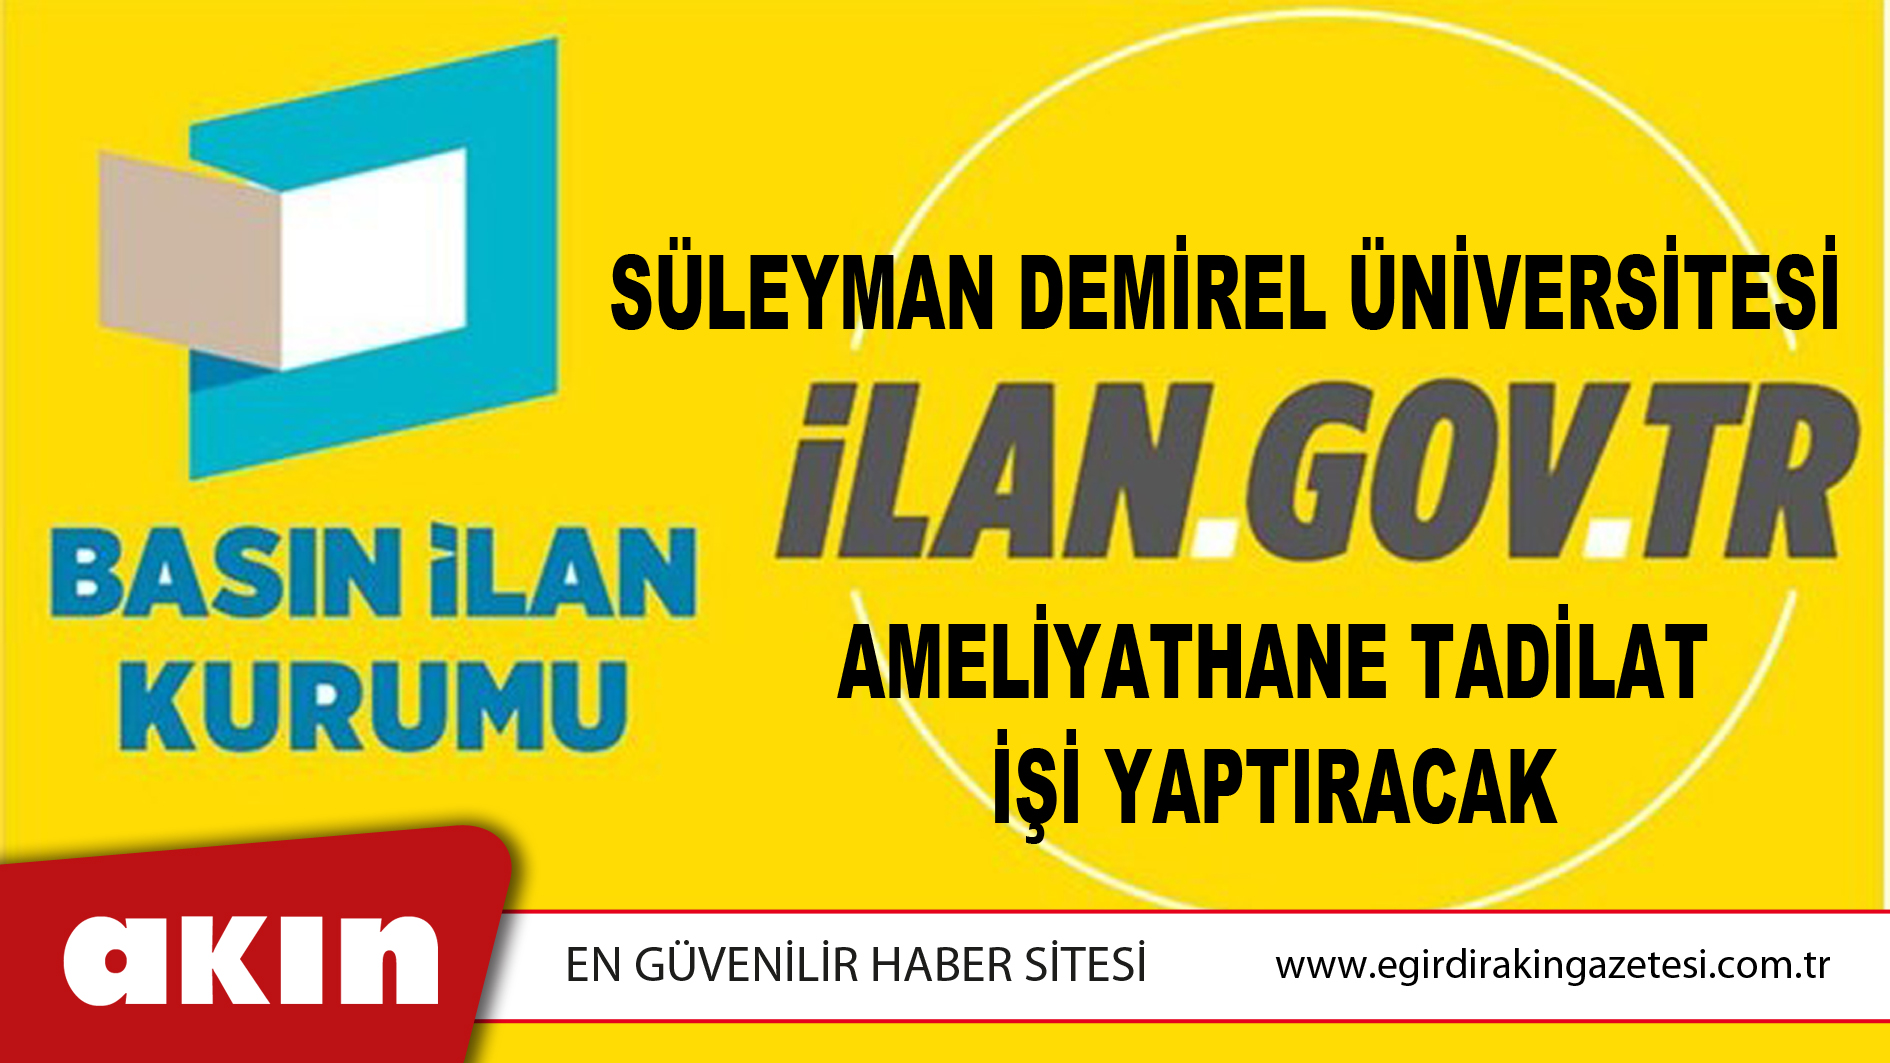 Süleyman Demirel Üniversitesi Ameliyathane Tadilat İşi Yaptıracak